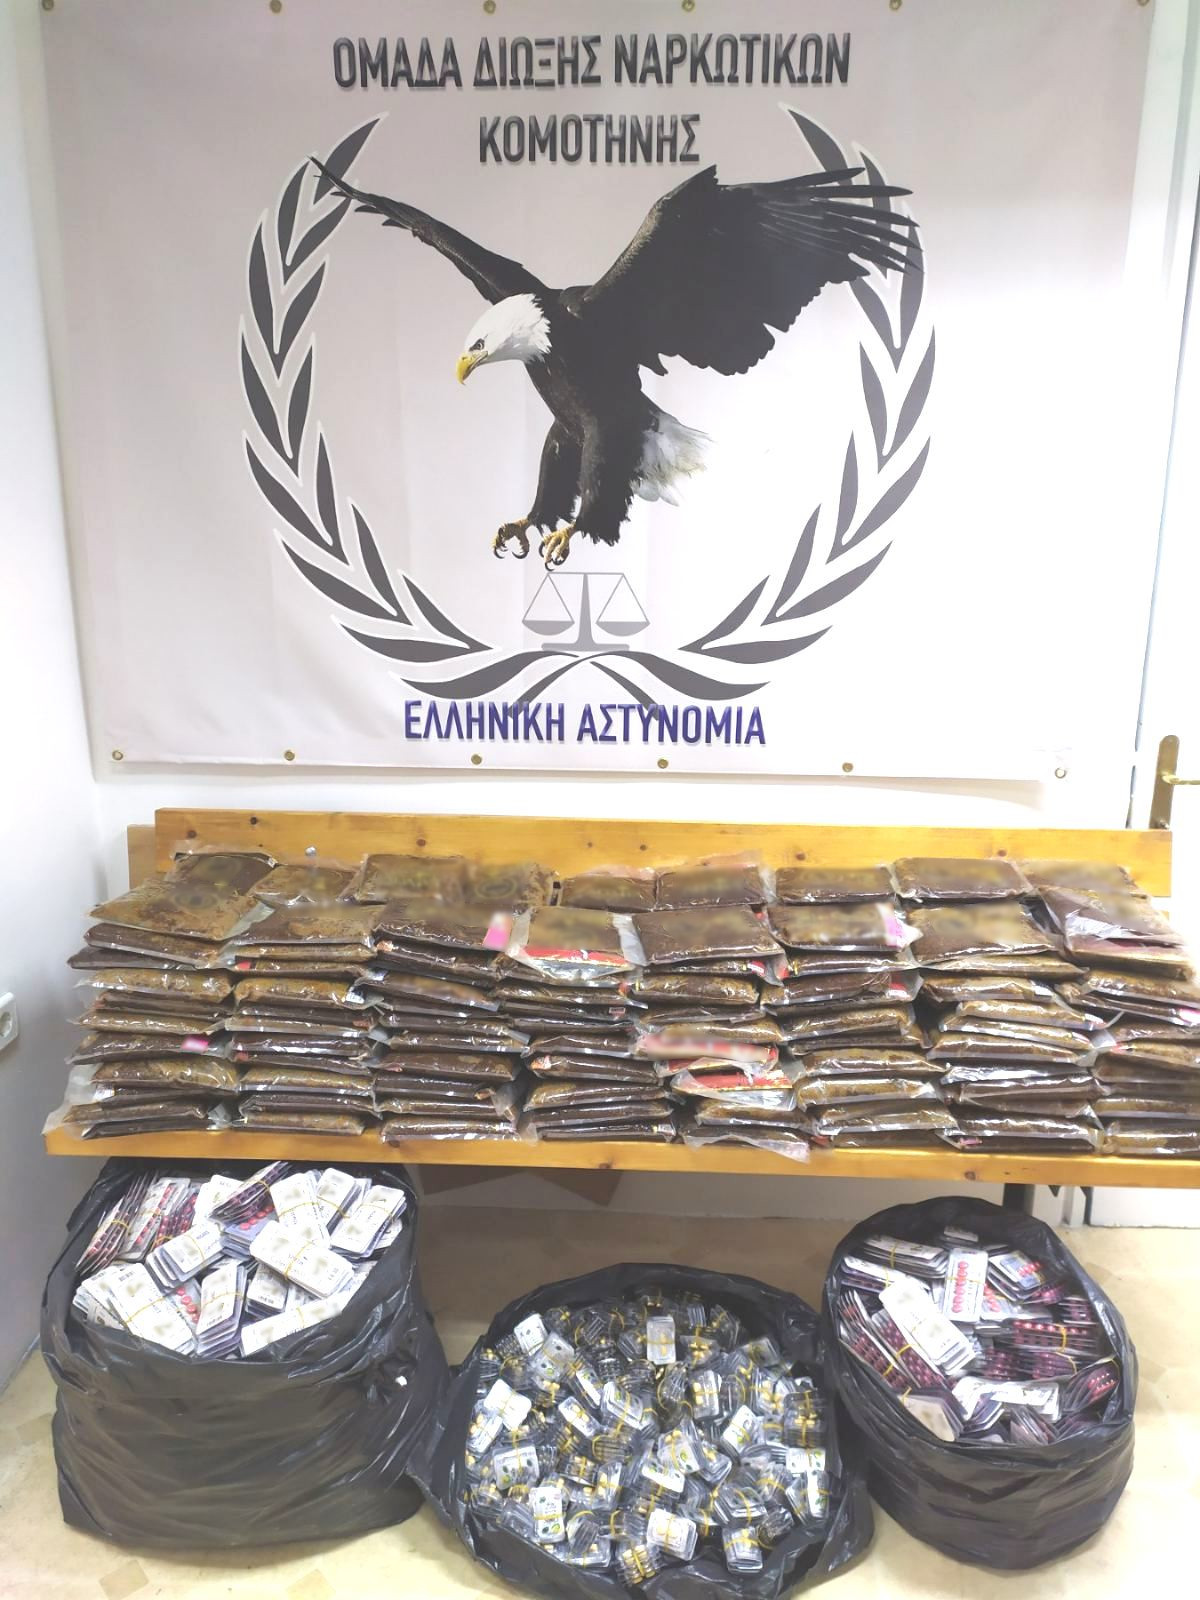 25.300 φαρμακευτικά σκευάσματα και 194 κιλά καπνού κατασχέθηκαν στο πλαίσιο συντονισμένης επιχείρησης από αστυνομικούς του Τμήματος Ασφάλειας Κομοτηνής